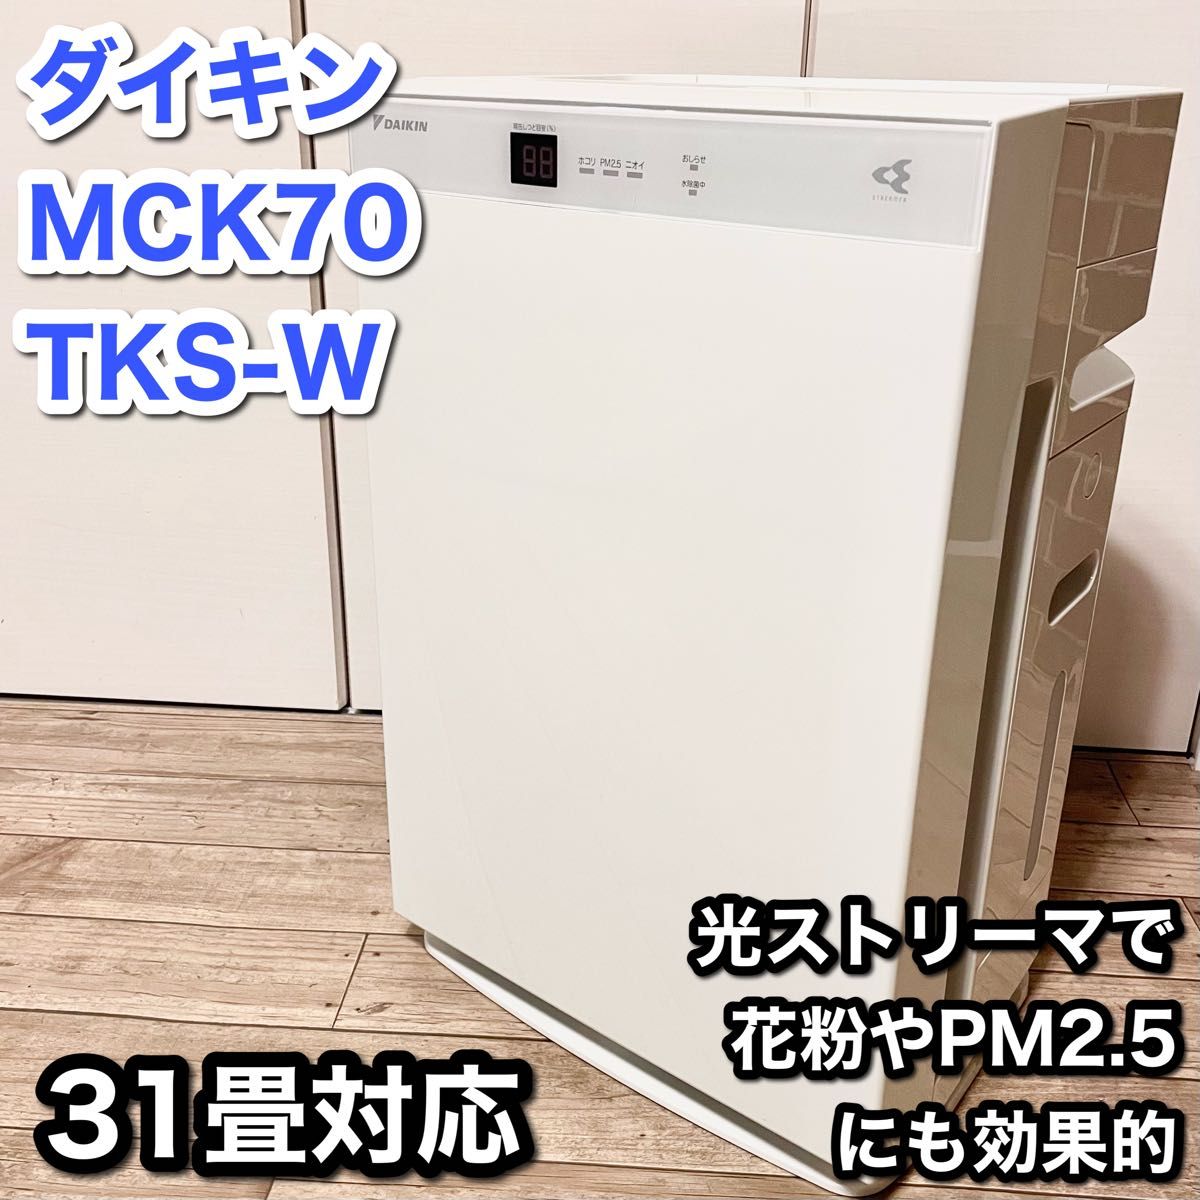 【ハイグレード31畳】ダイキン 空気清浄機 MCK70TKS